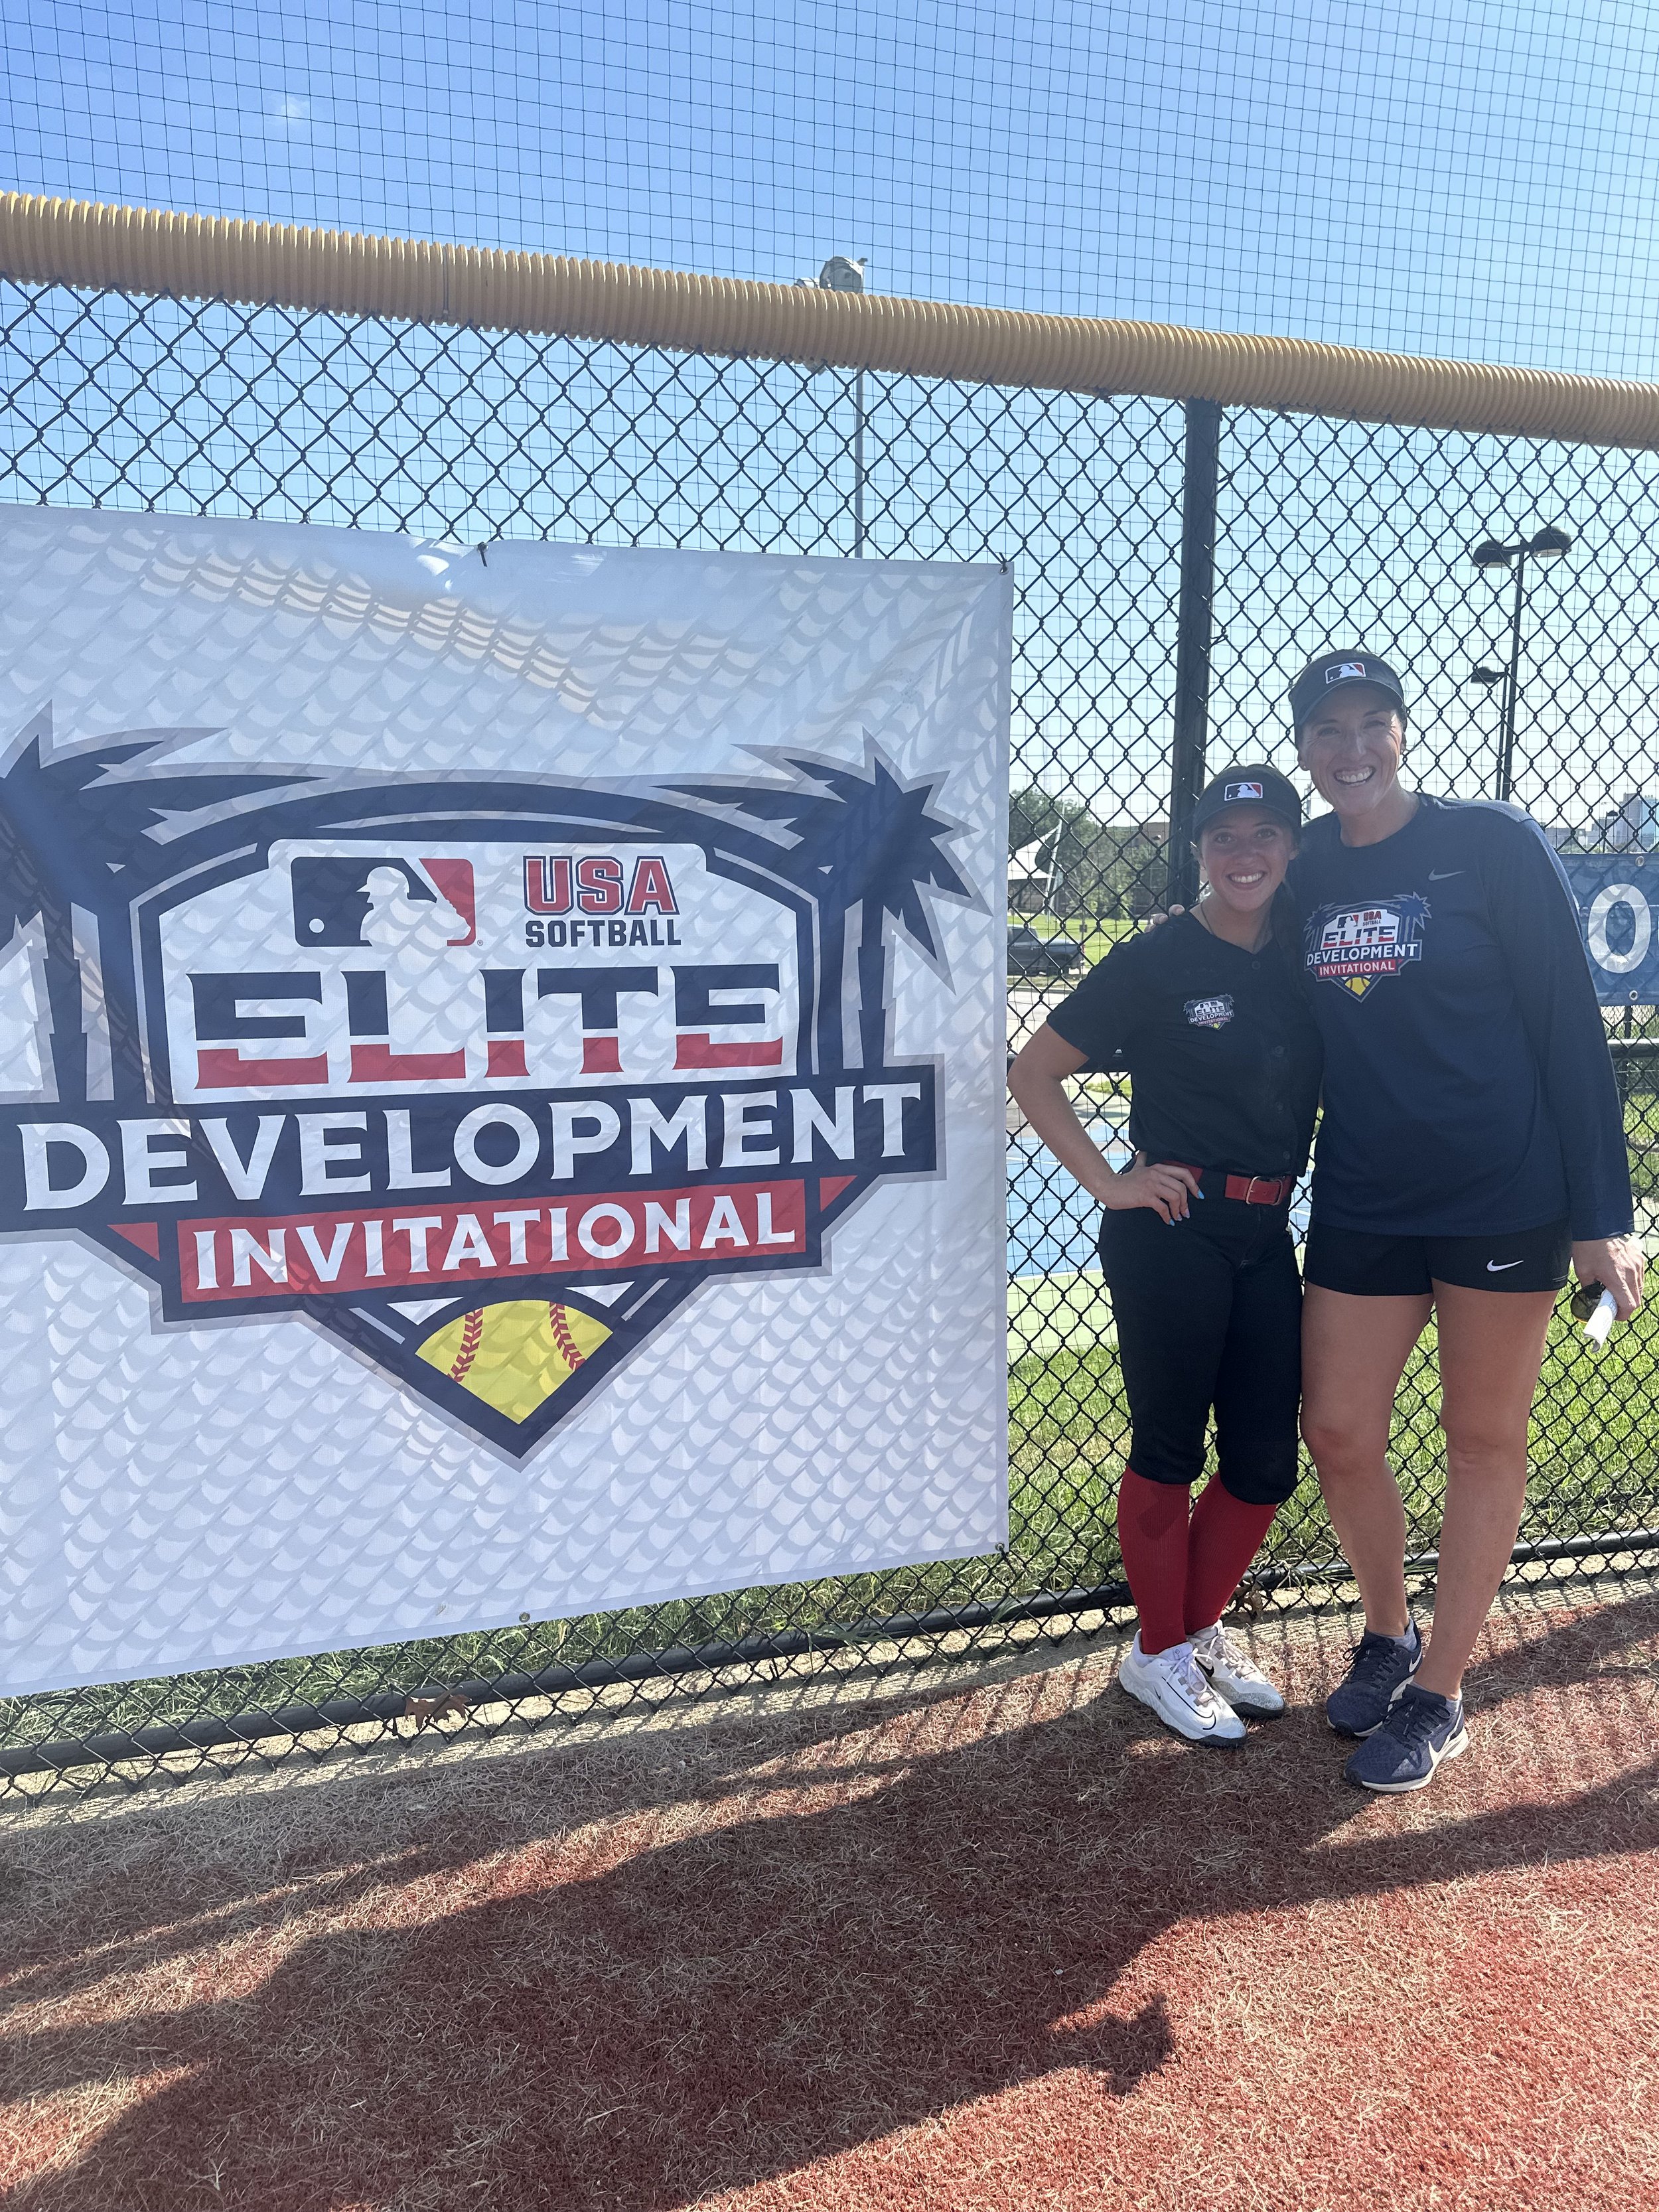 MLB Elite Development Invitational